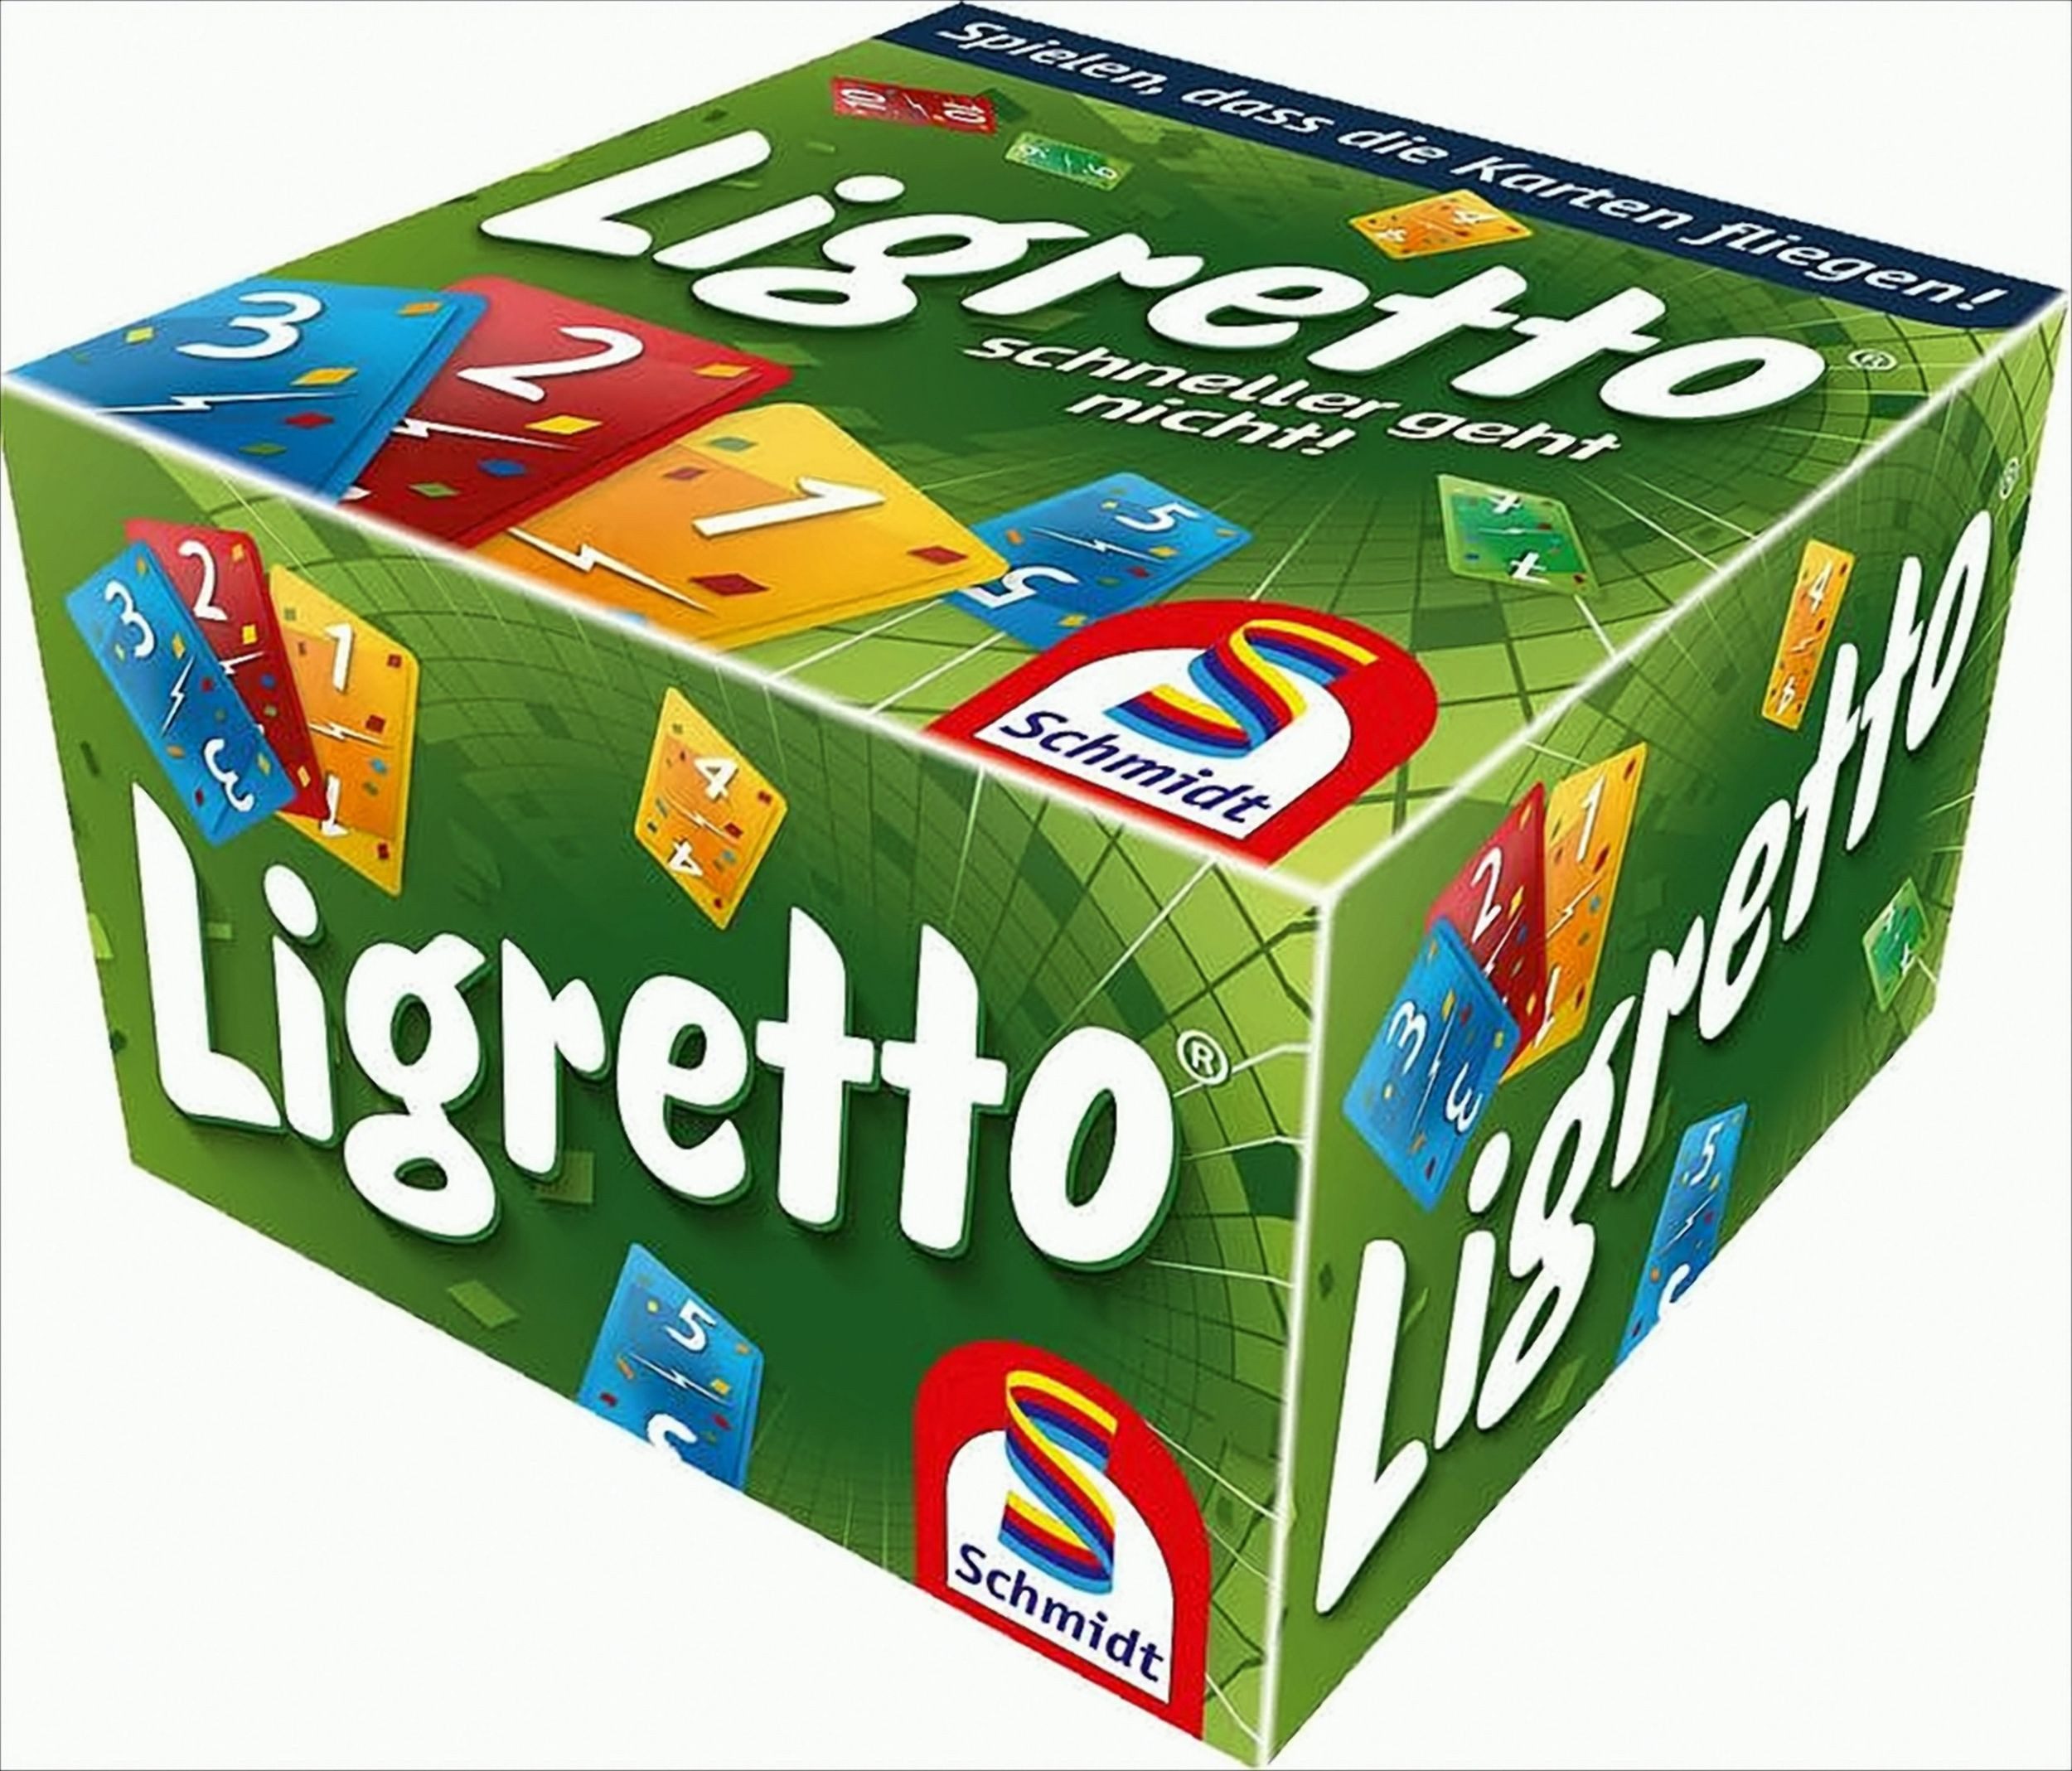 Schmidt Spiele Spiel, Ligretto - grün Ligretto - grün